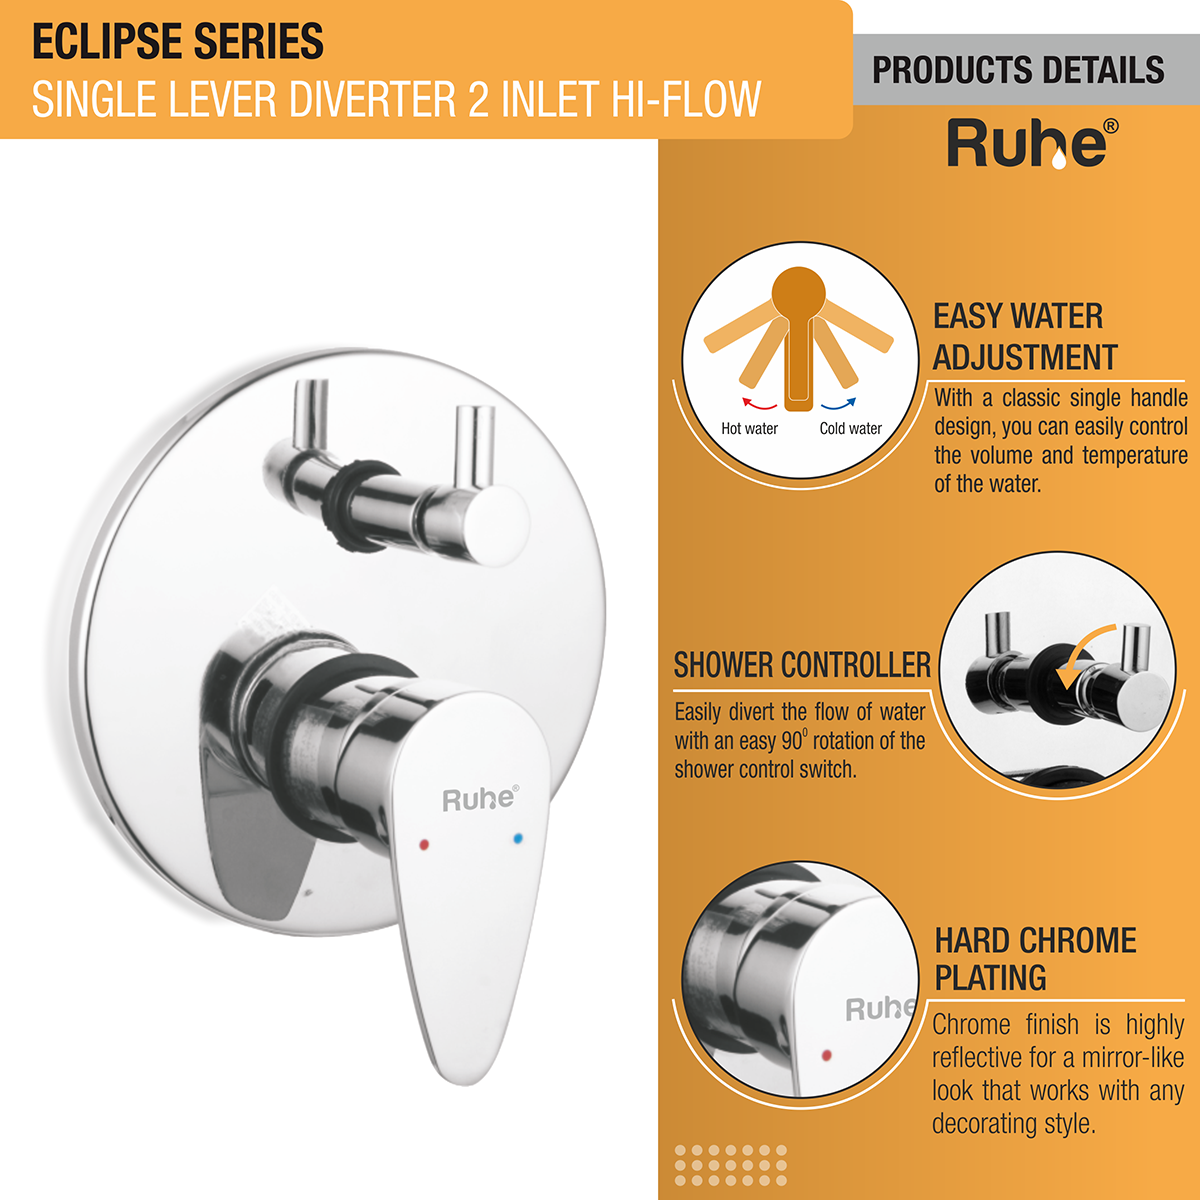 Eclipse Single Lever 2-inlet Hi-Flow Diverter (Product Details)